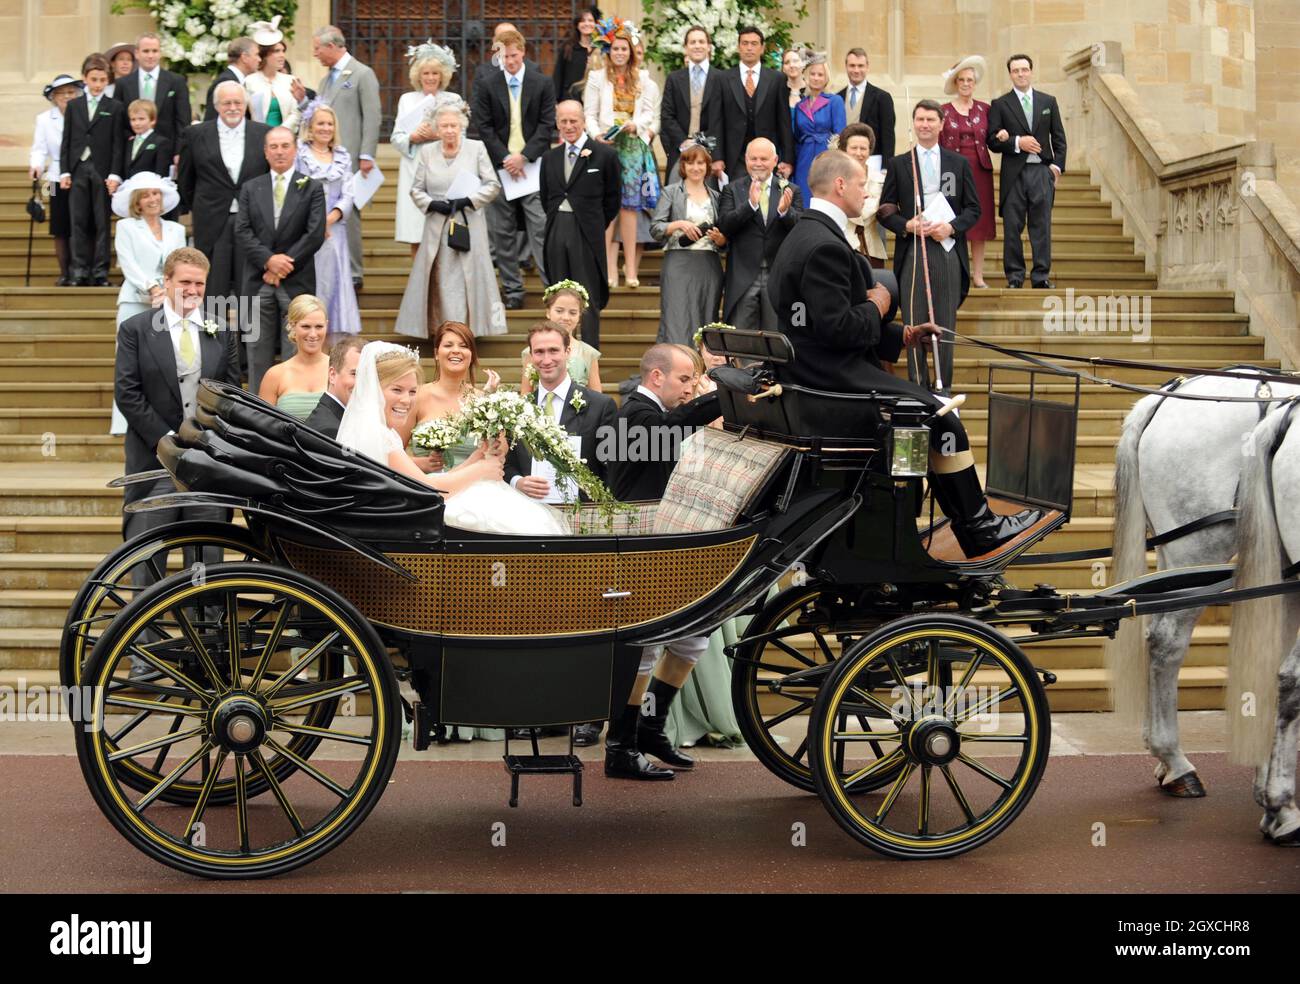 Peter Phillips e Autunno Kelly lasciano la Cappella di San Giorgio in carrozza trainata da cavalli dopo la cerimonia di matrimonio al Castello di Windor, Windsor. Foto Stock